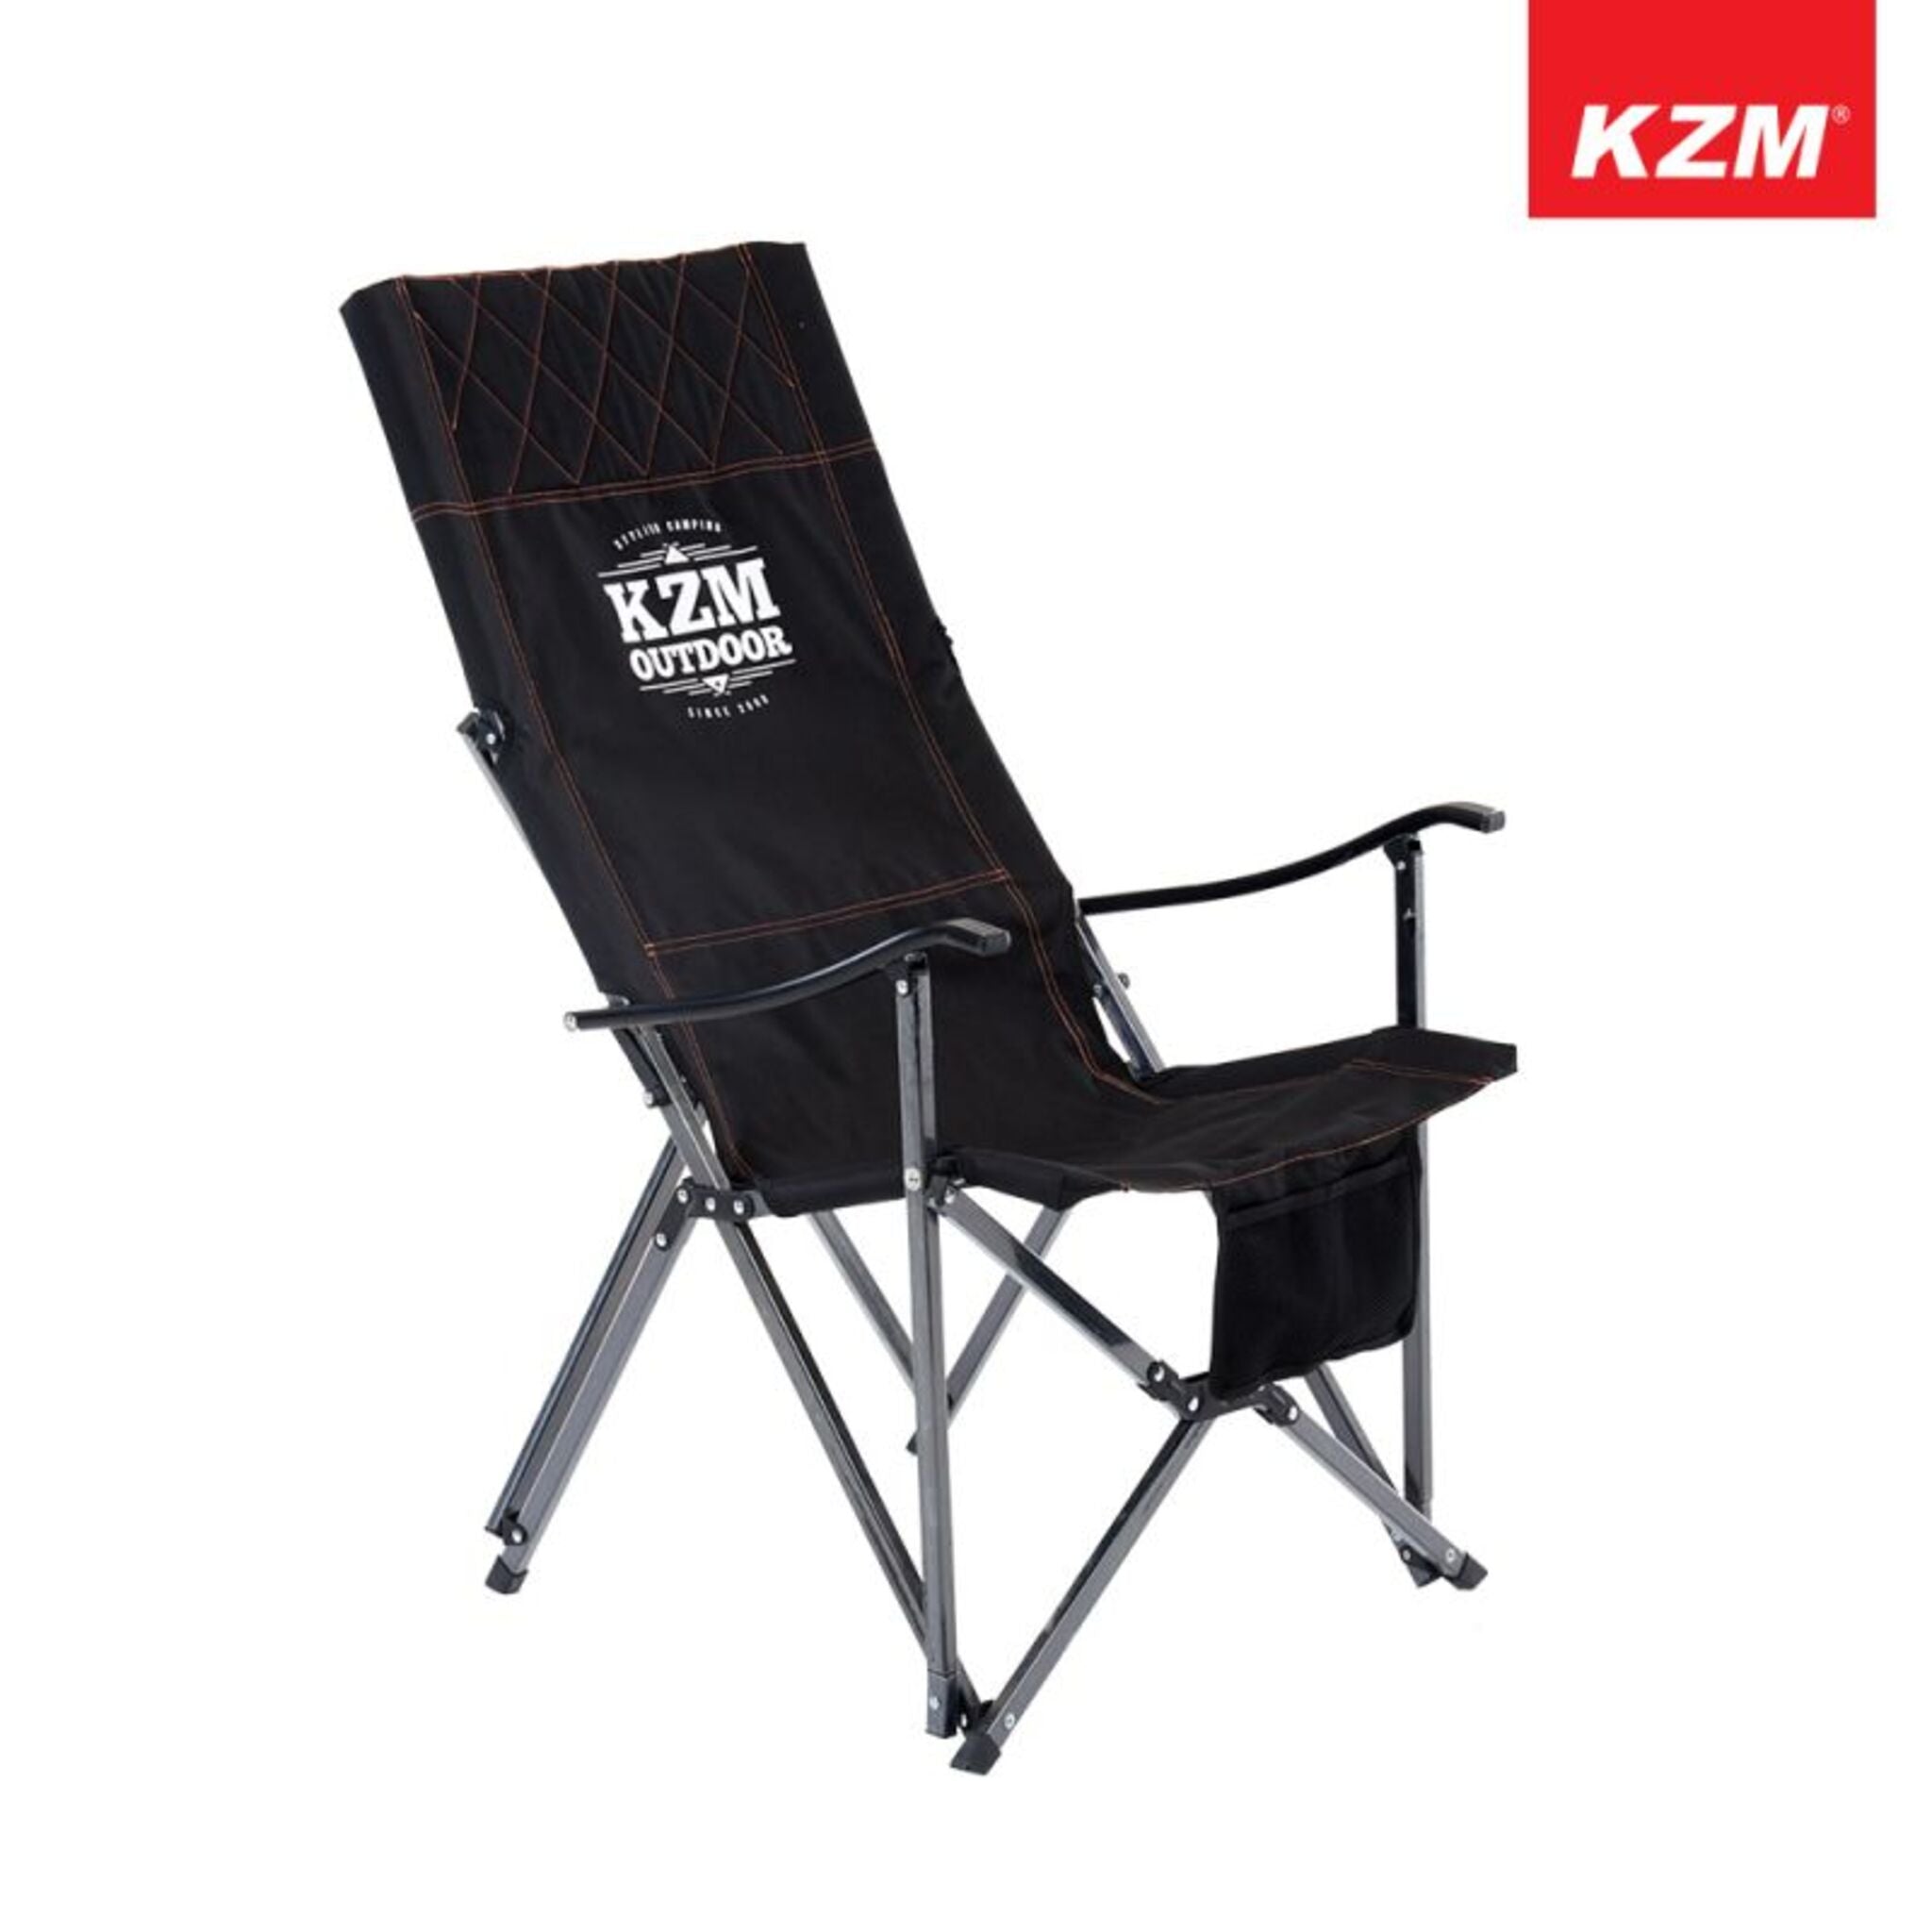 KAZMI KZM 極簡時尚豪華休閒折疊椅 (經典黑) K9T3C004